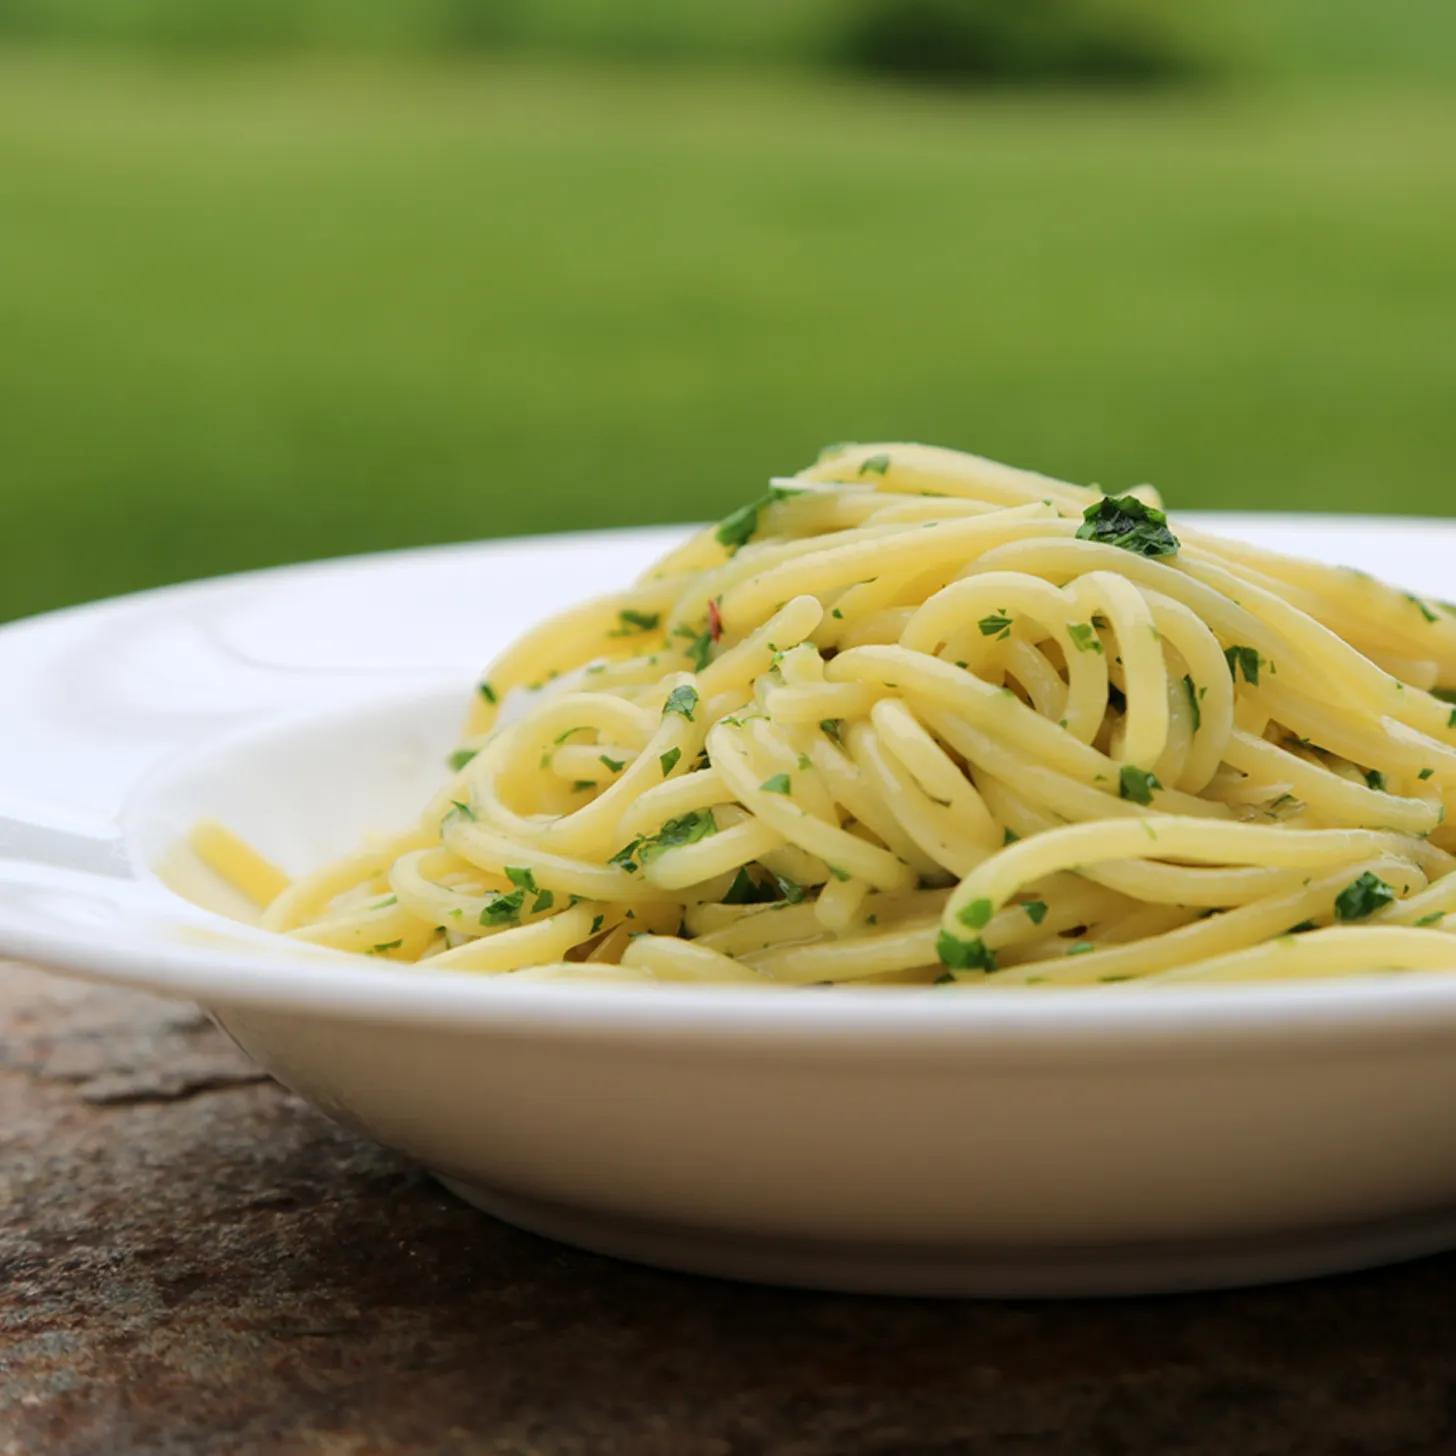 Spaghetti Aglio e Olio Recipe | POPSUGAR Food